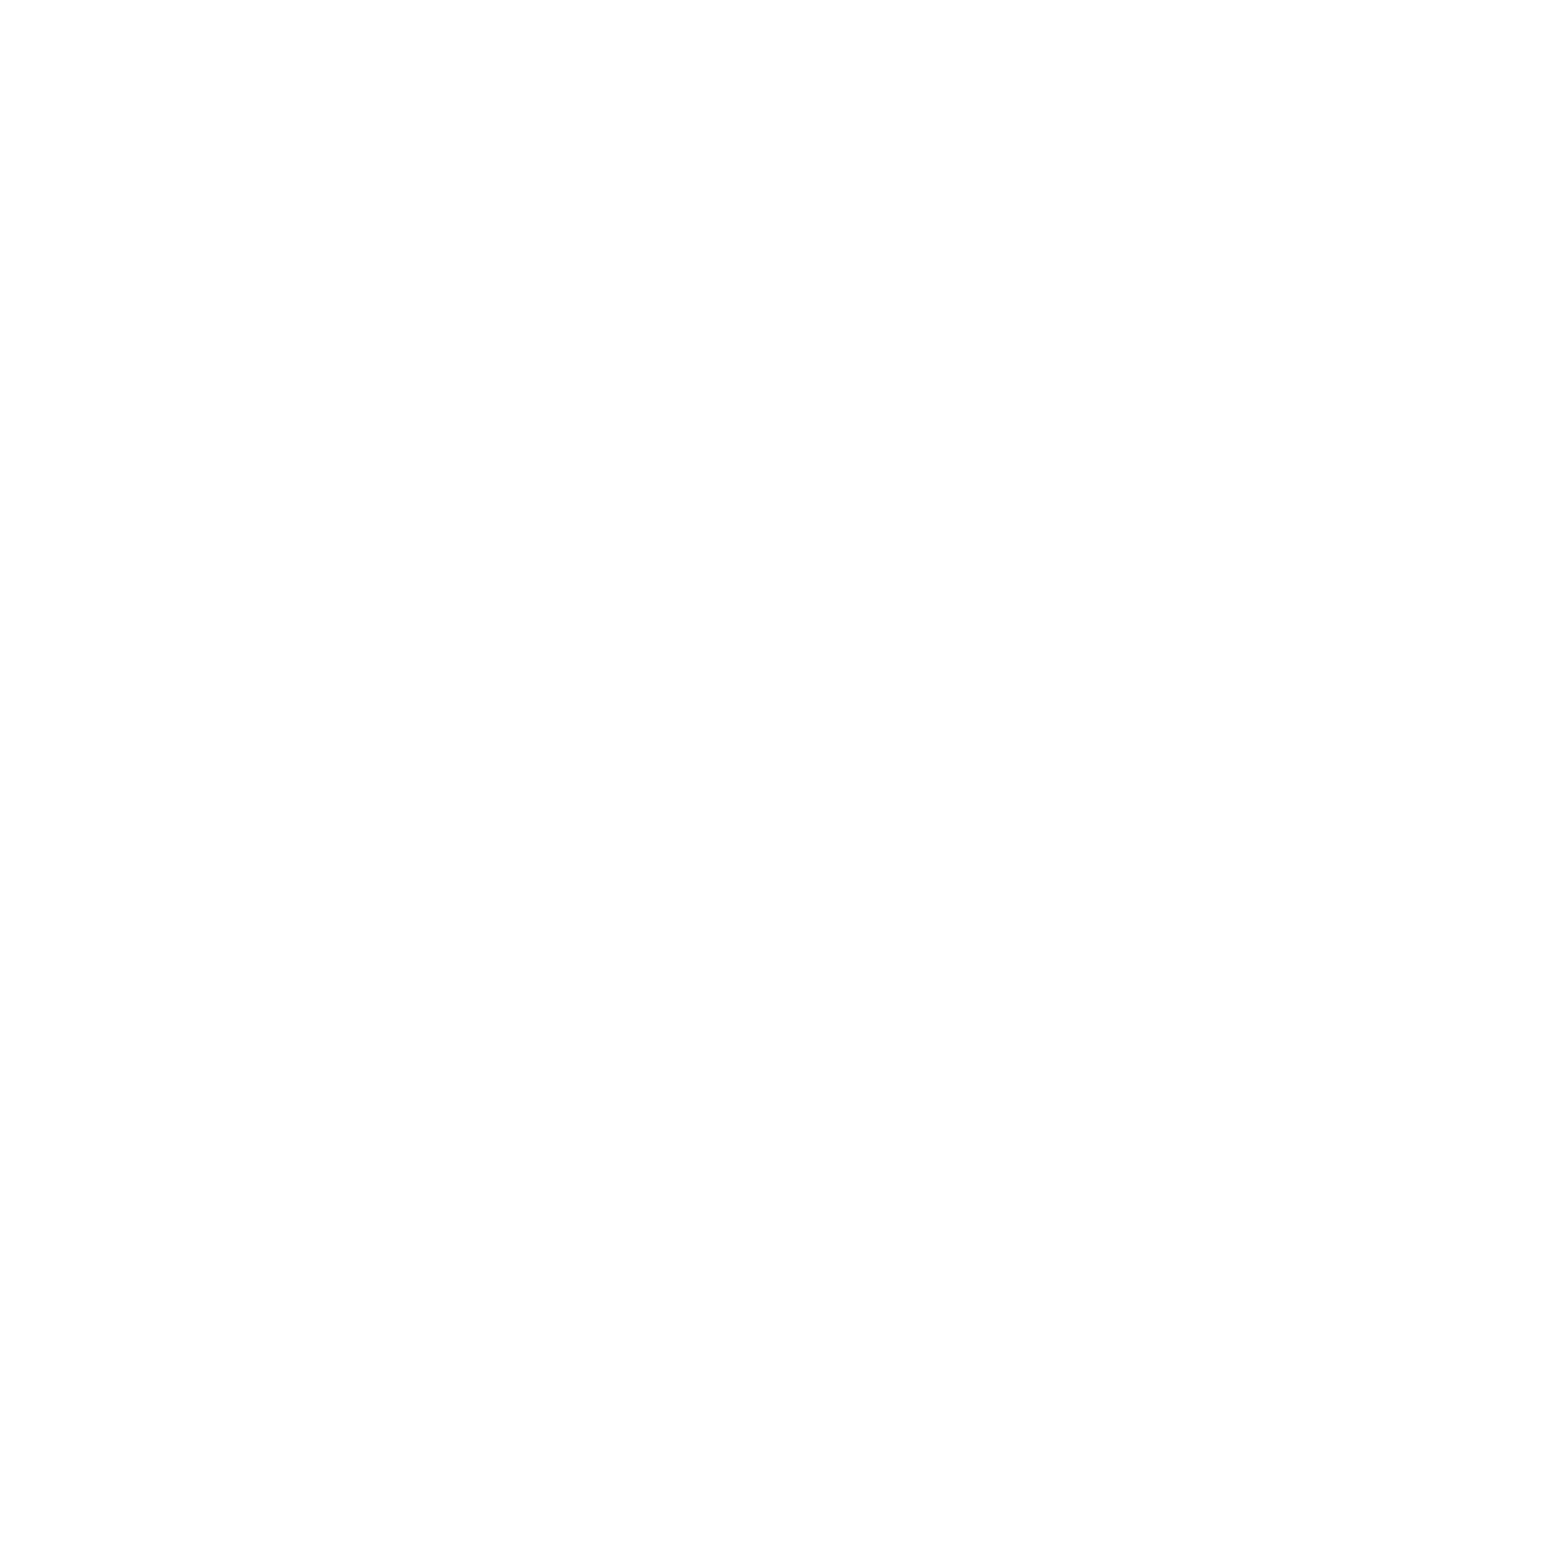 WaFd Bank logo for dark backgrounds (transparent PNG)